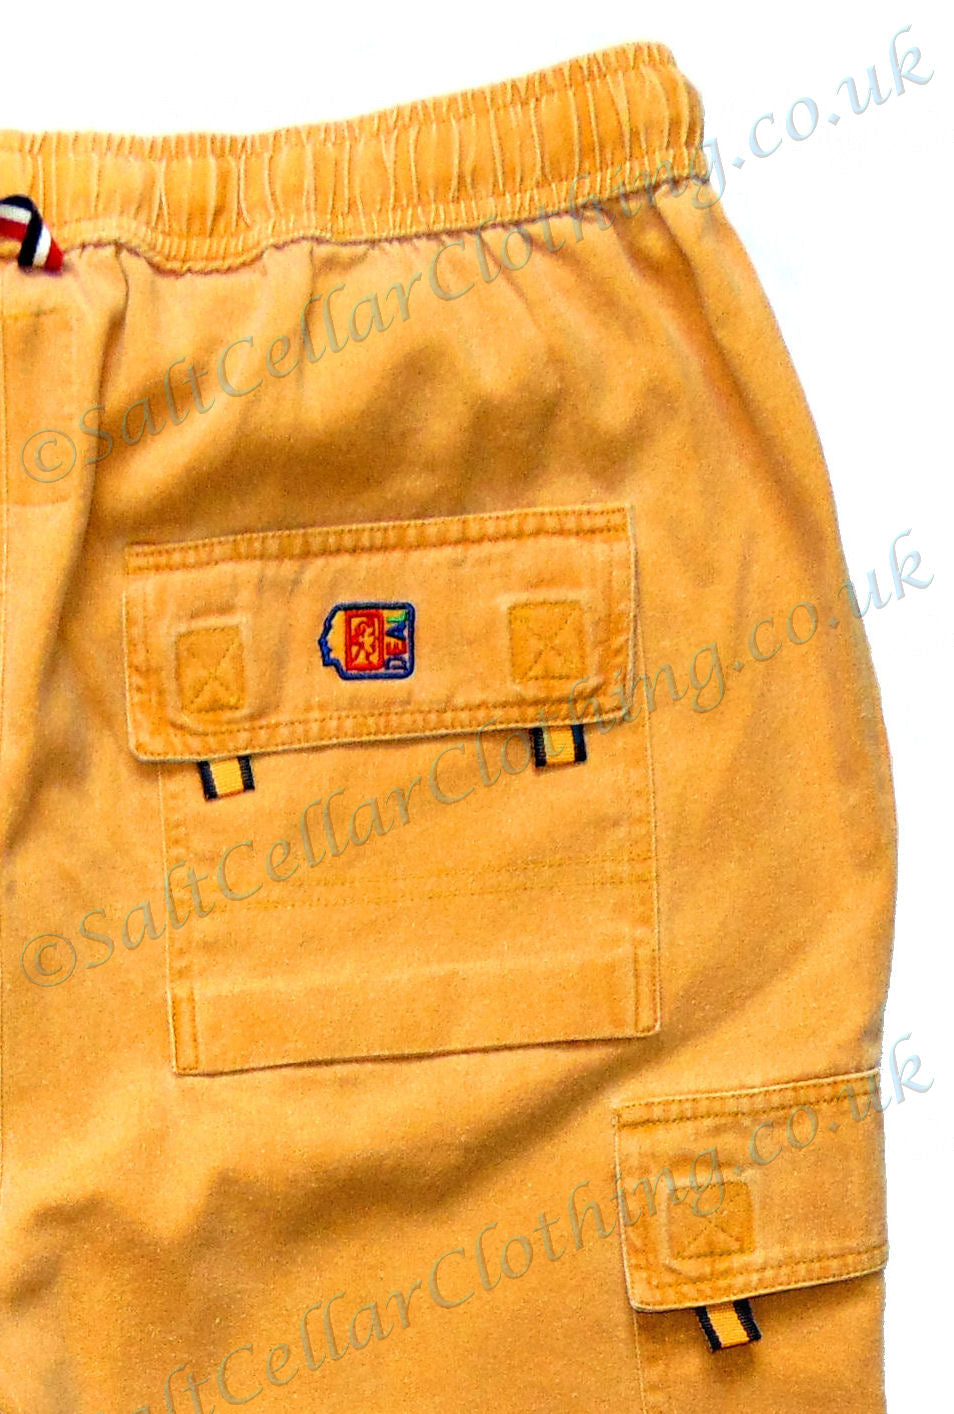 Deal Clothing Mens 'AS125' Cargo Shorts - Saffron Yellow